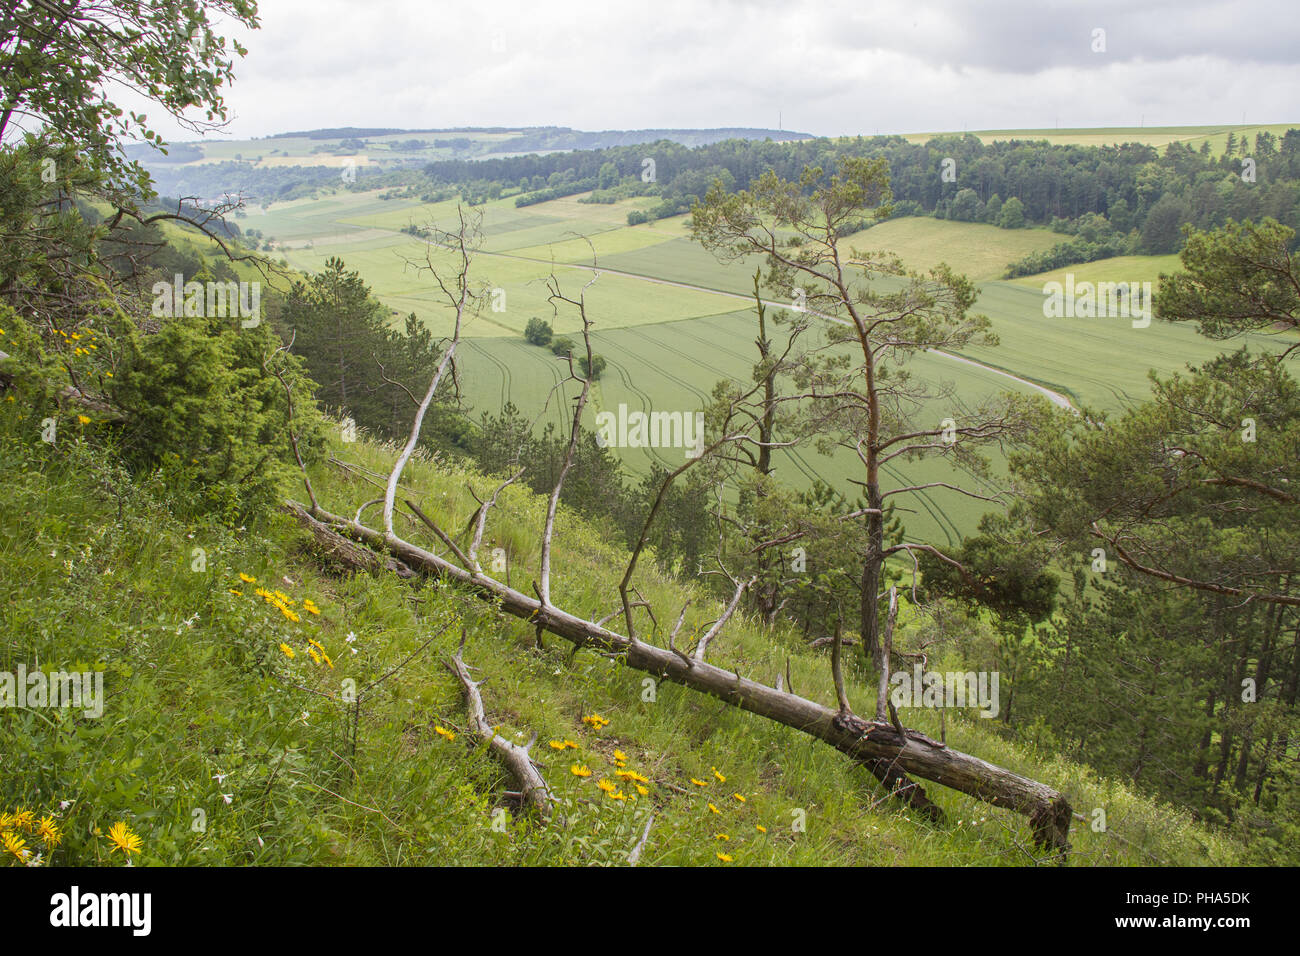 Paesaggio protetto nella valle Tauber vicino Koenigheim, Germania Foto Stock